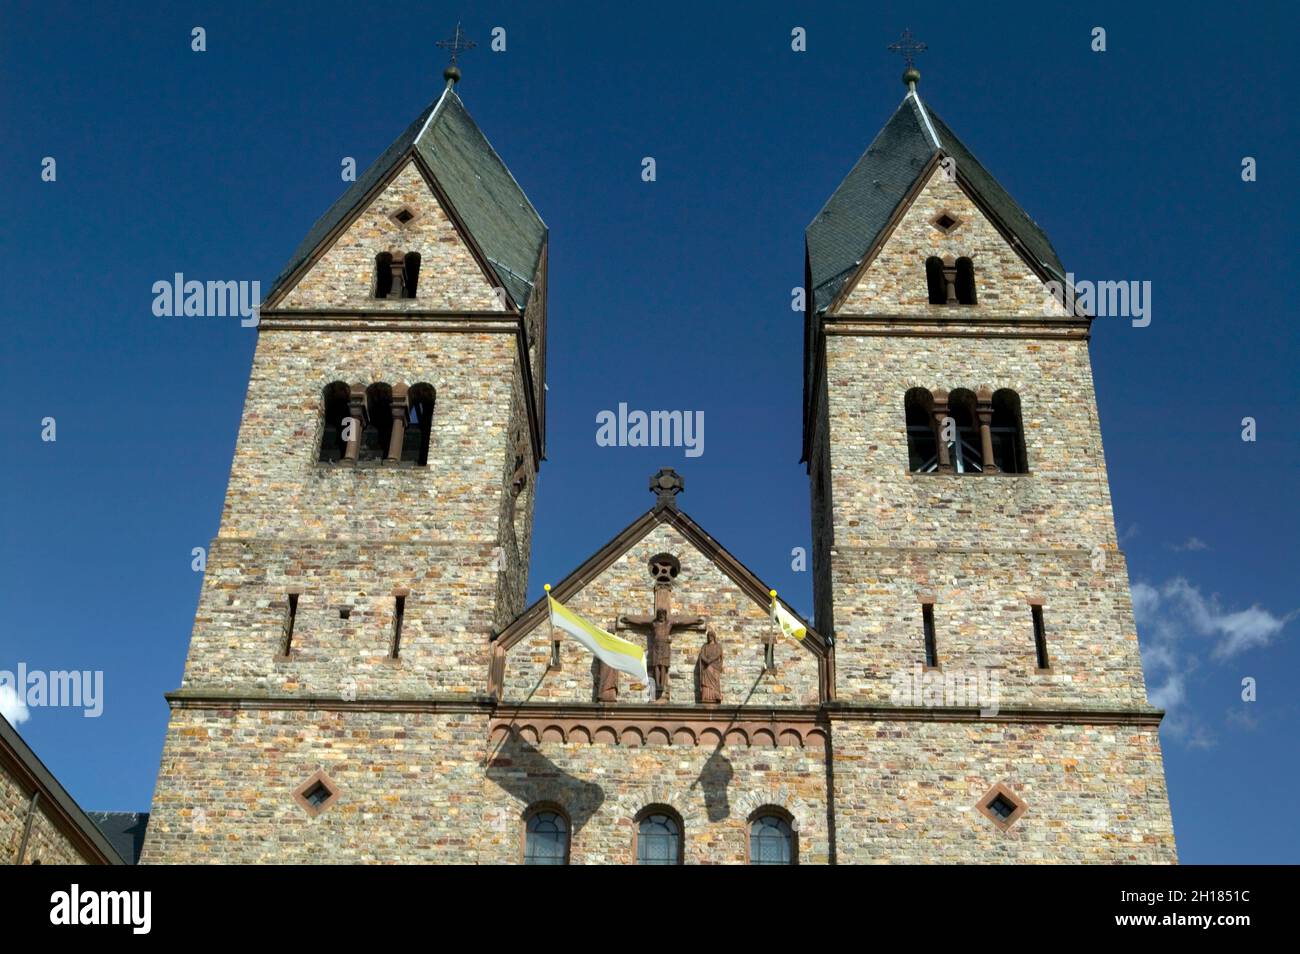 The monastery of St. Hildegard, Eibingen near Ruedesheim, founded by Hildegard von Bingen, Rheinland Pfalz, Germany, Europe Stock Photo